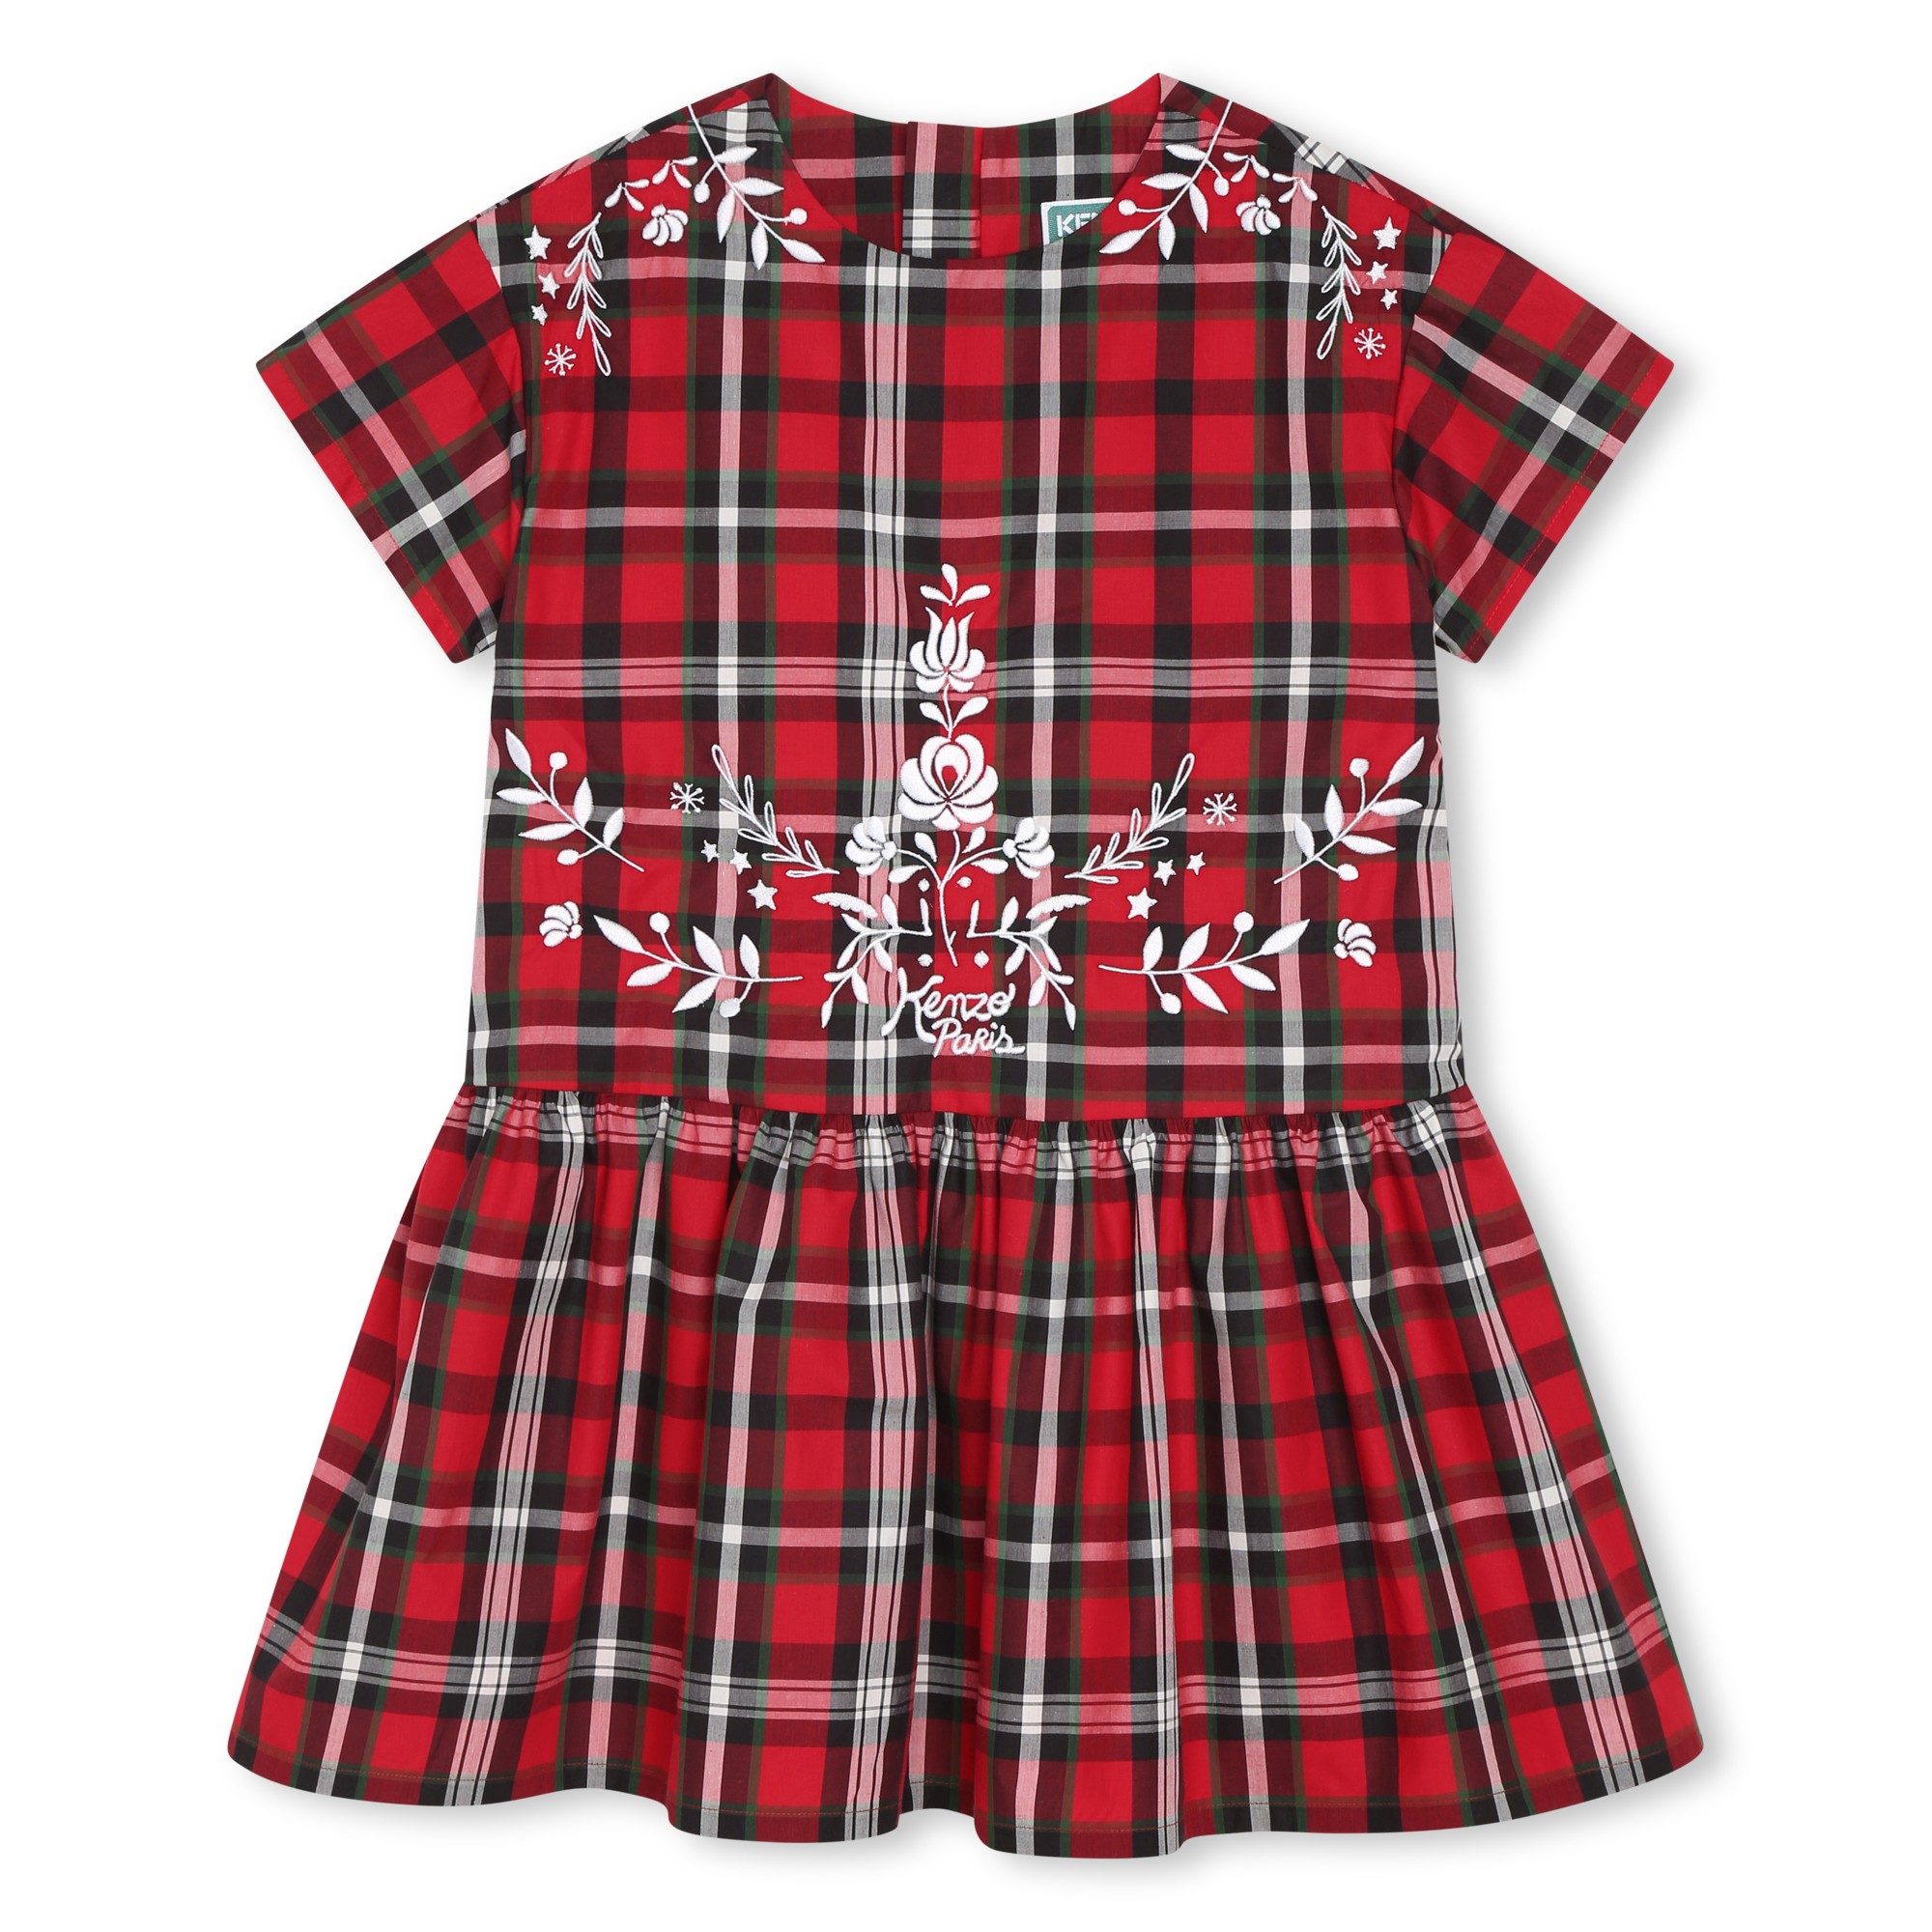 Short-sleeved cotton dress KENZO KIDS for GIRL